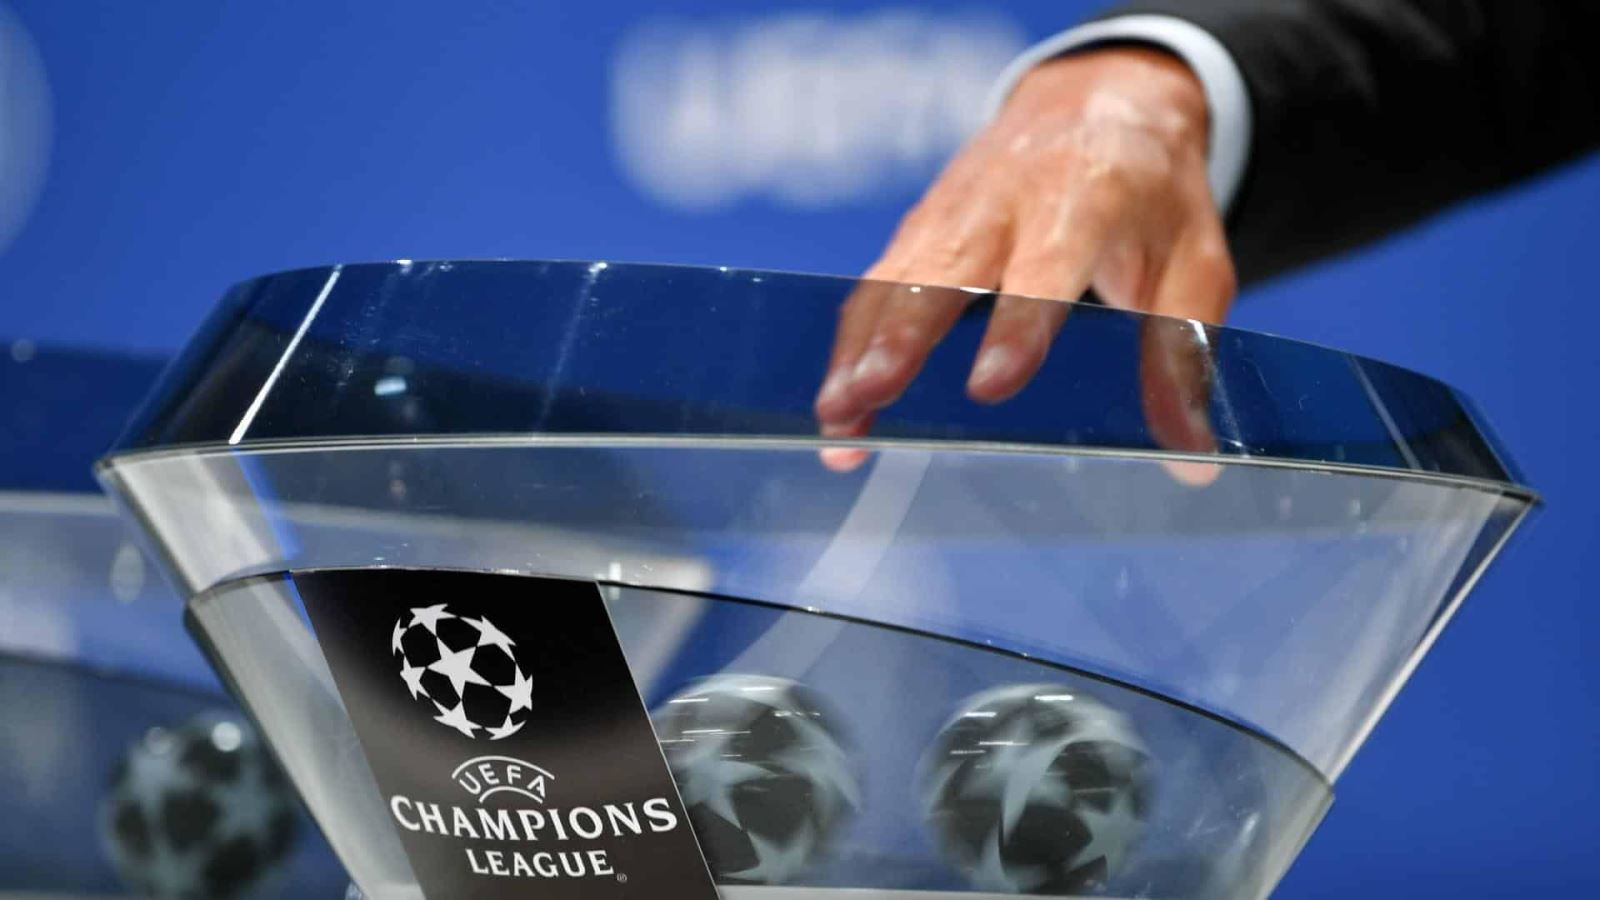 Xem trực tiếp bốc thăm vòng bảng Cúp C1 - Champions League ở đâu?